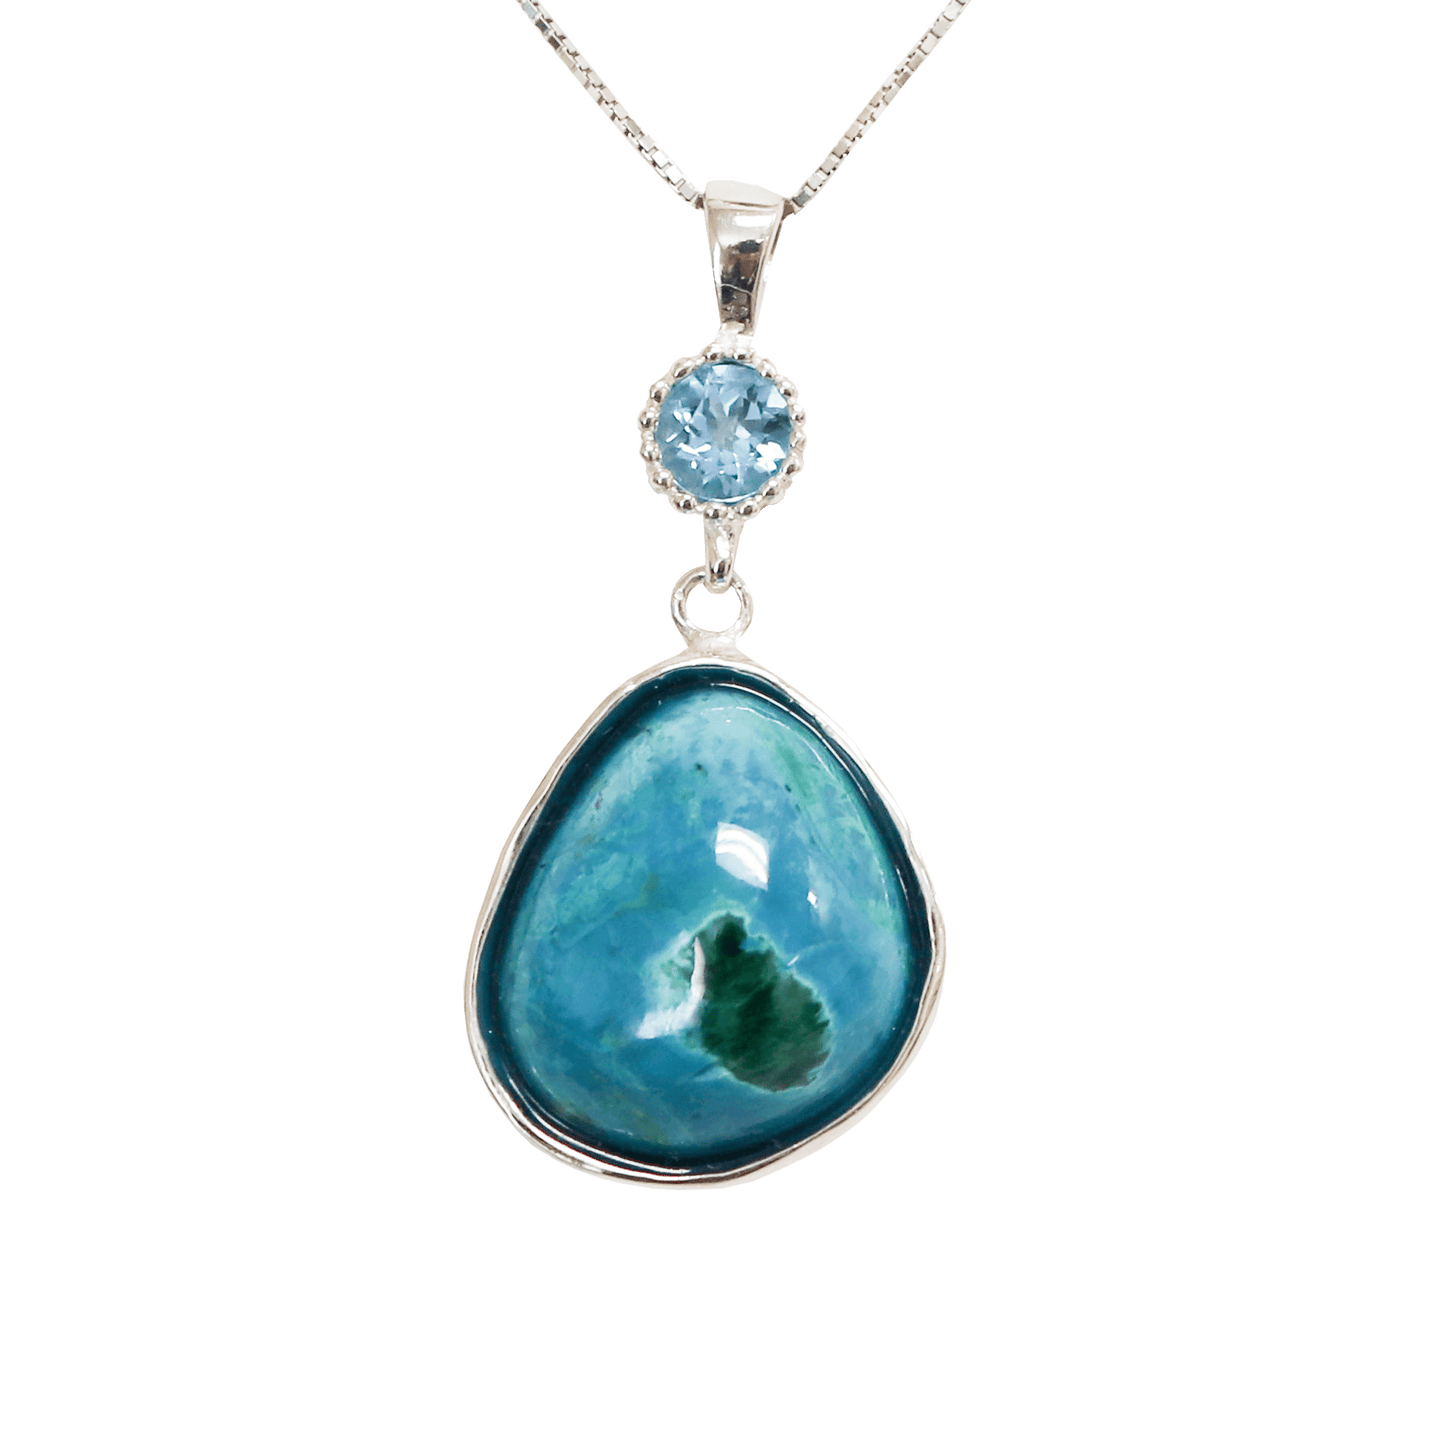 Eilat Stone Necklace with Aquamarine Stone